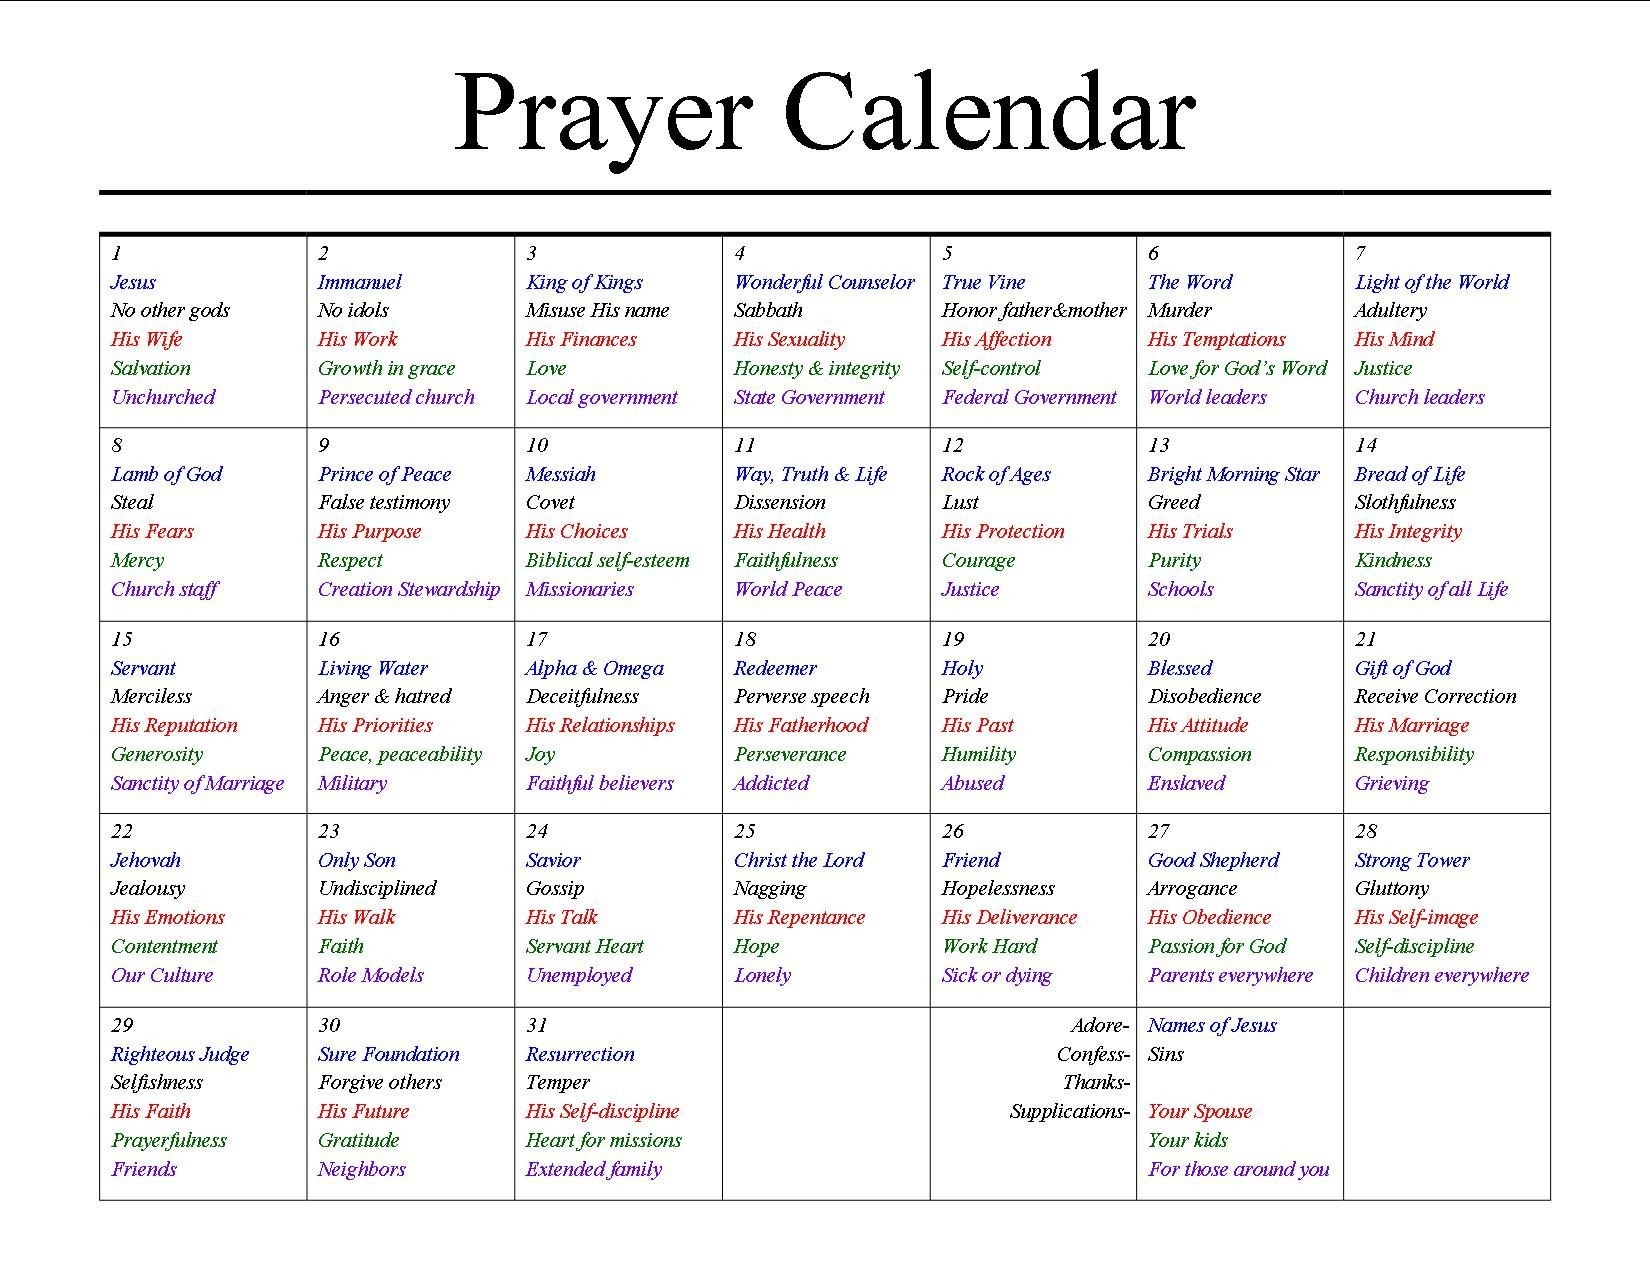 A Prayer Calendar | Prayers, Prayer List, Prayer Scriptures  Calender With Scriptures Template